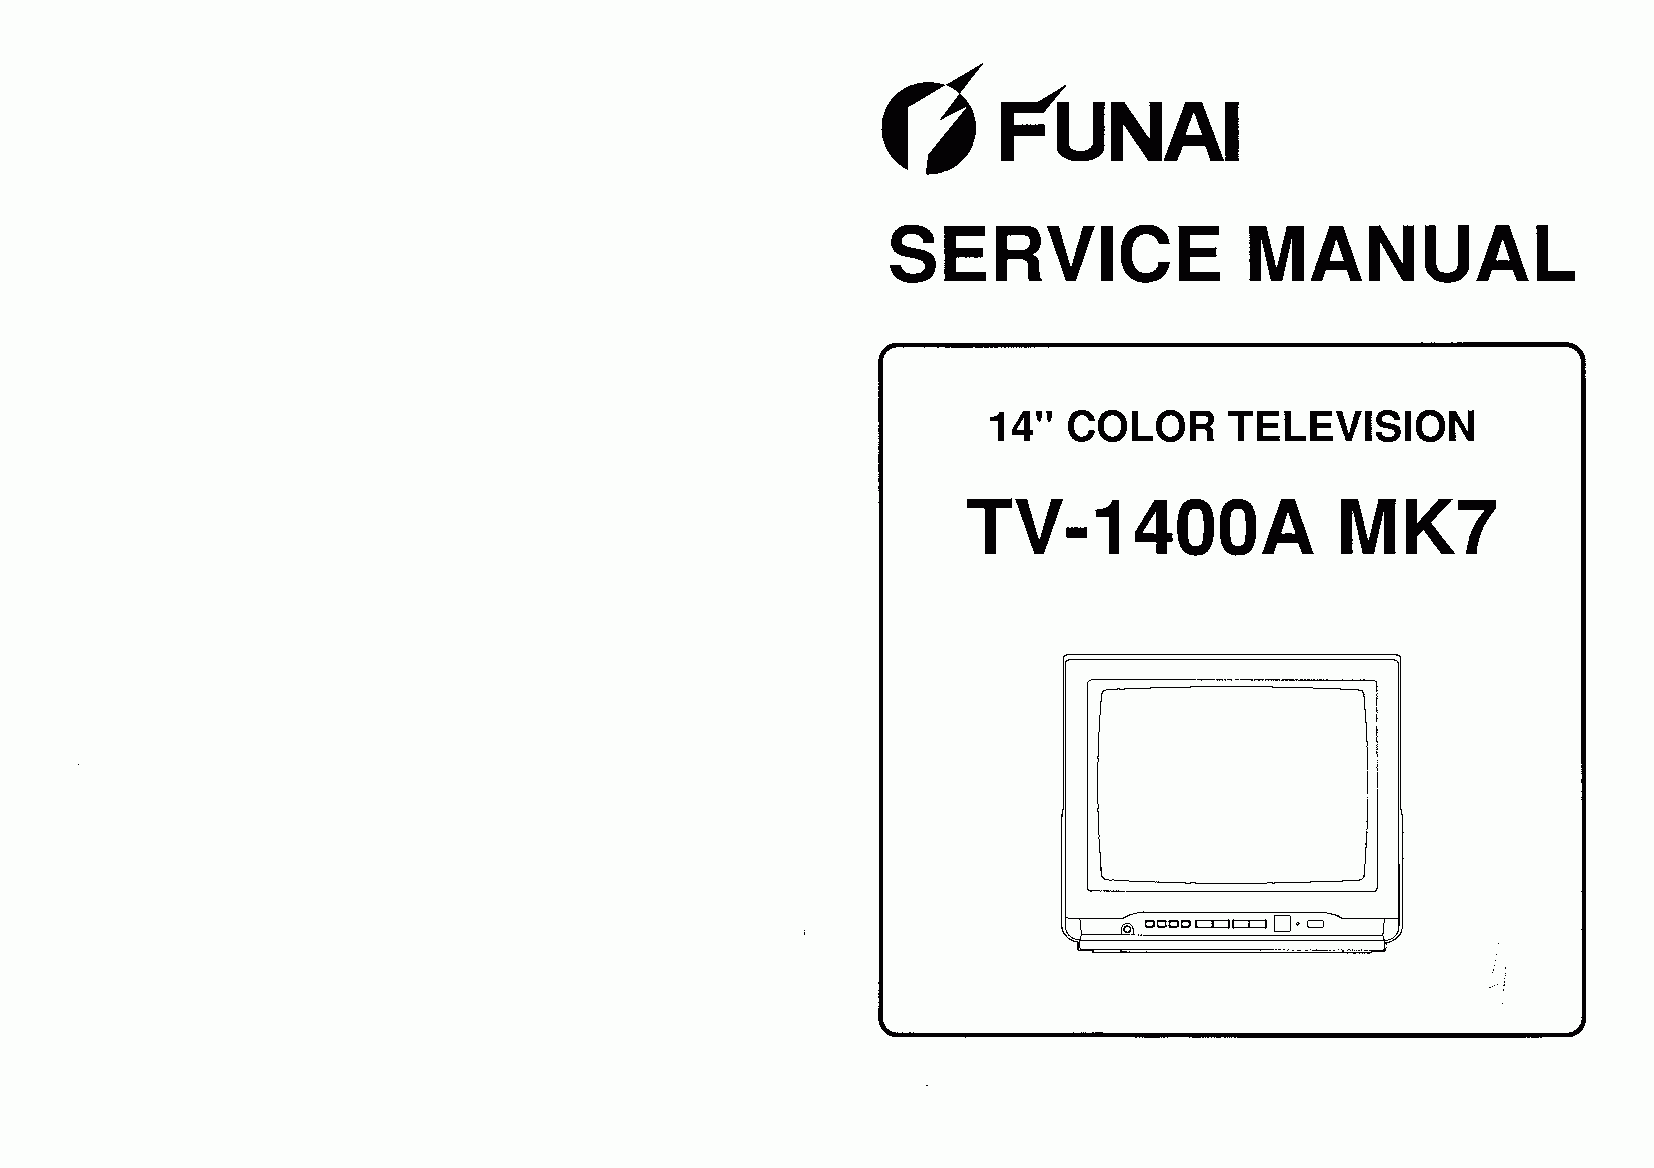 Телевизор фунай мк10 инструкция по эксплуатации скачать бесплатно